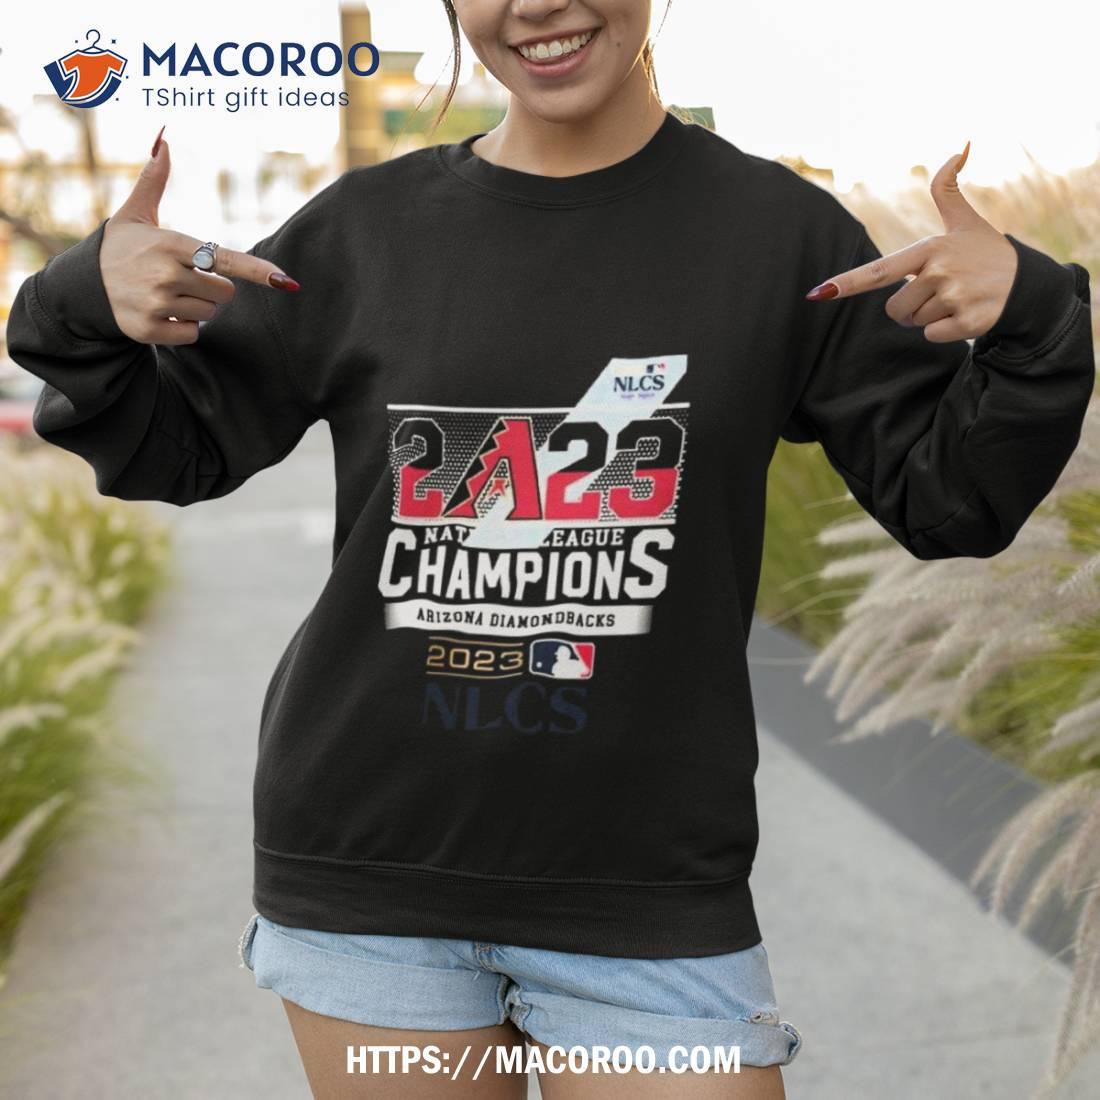 Vintage 2001 Arizona Diamondbacks Original Logo National League Champions Tshirt - XL